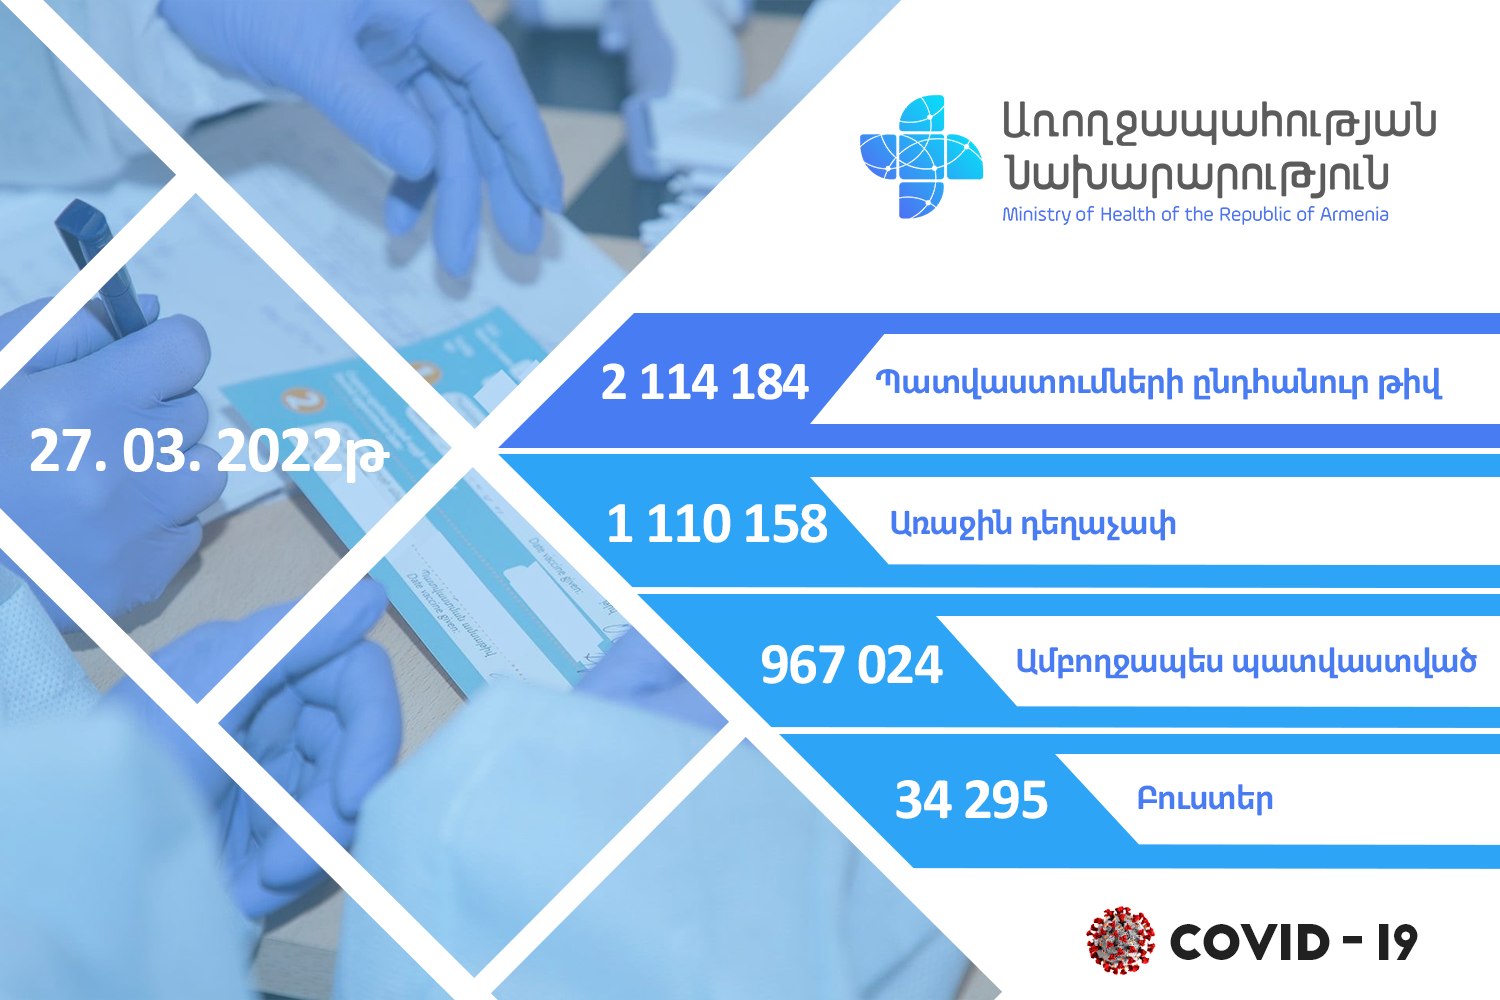 Կորոնավիրուսի դեմ պատվաստանյութերի խթանիչ դեղաչափ է ստացել 34 295 քաղաքացի